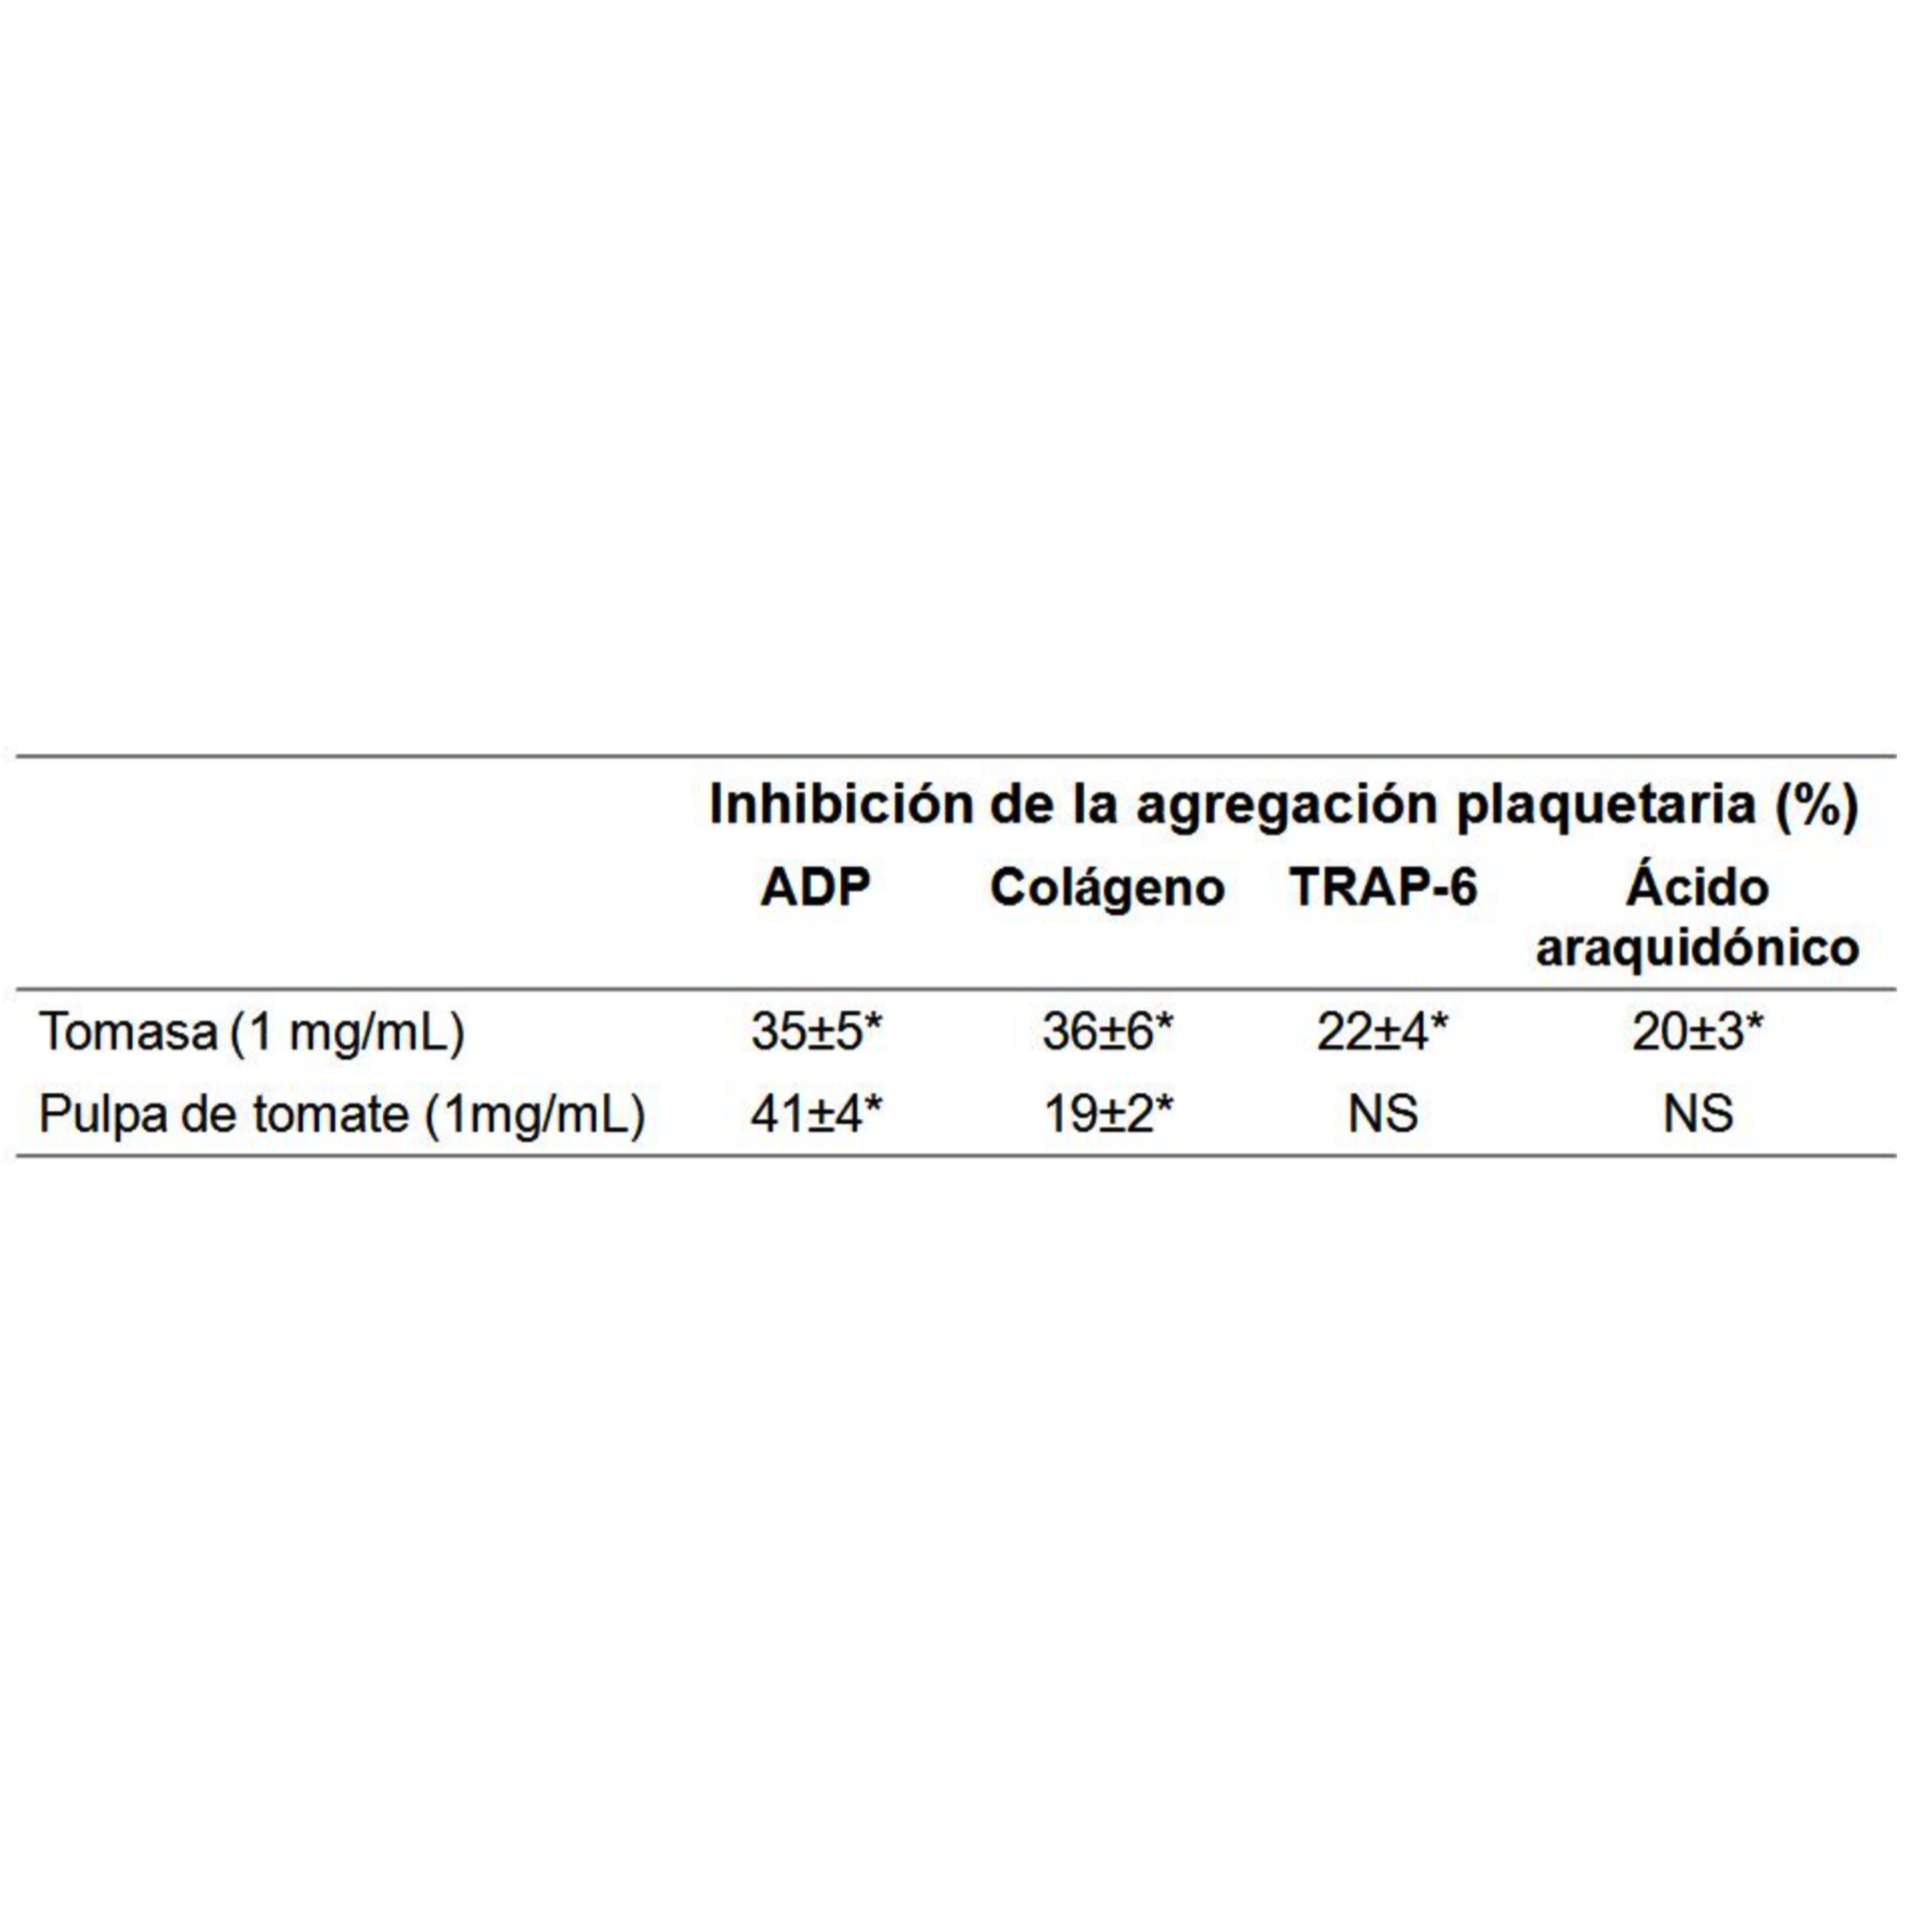 \label{}Cuadro 16.4 Actividad antiagregante plaquetaria del extracto acuoso de tomasa usando cuatro agonistas.